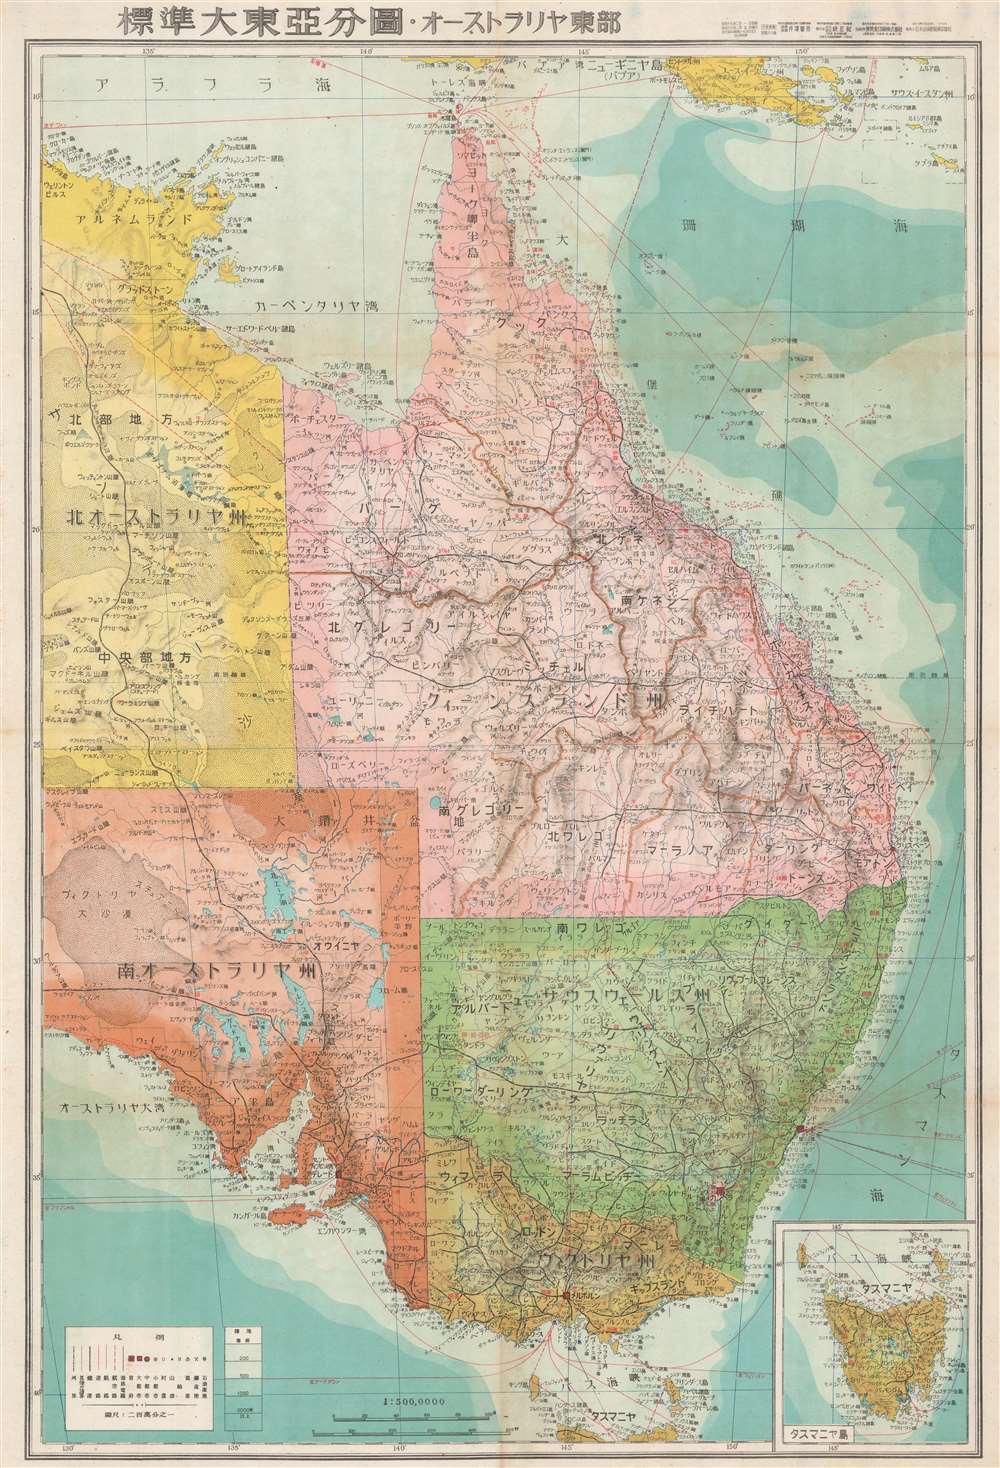 標準大東亞分圖 オーストラリア東部. / Greater East Asia Co-Prosperity Sphere. Eastern Australia. - Main View